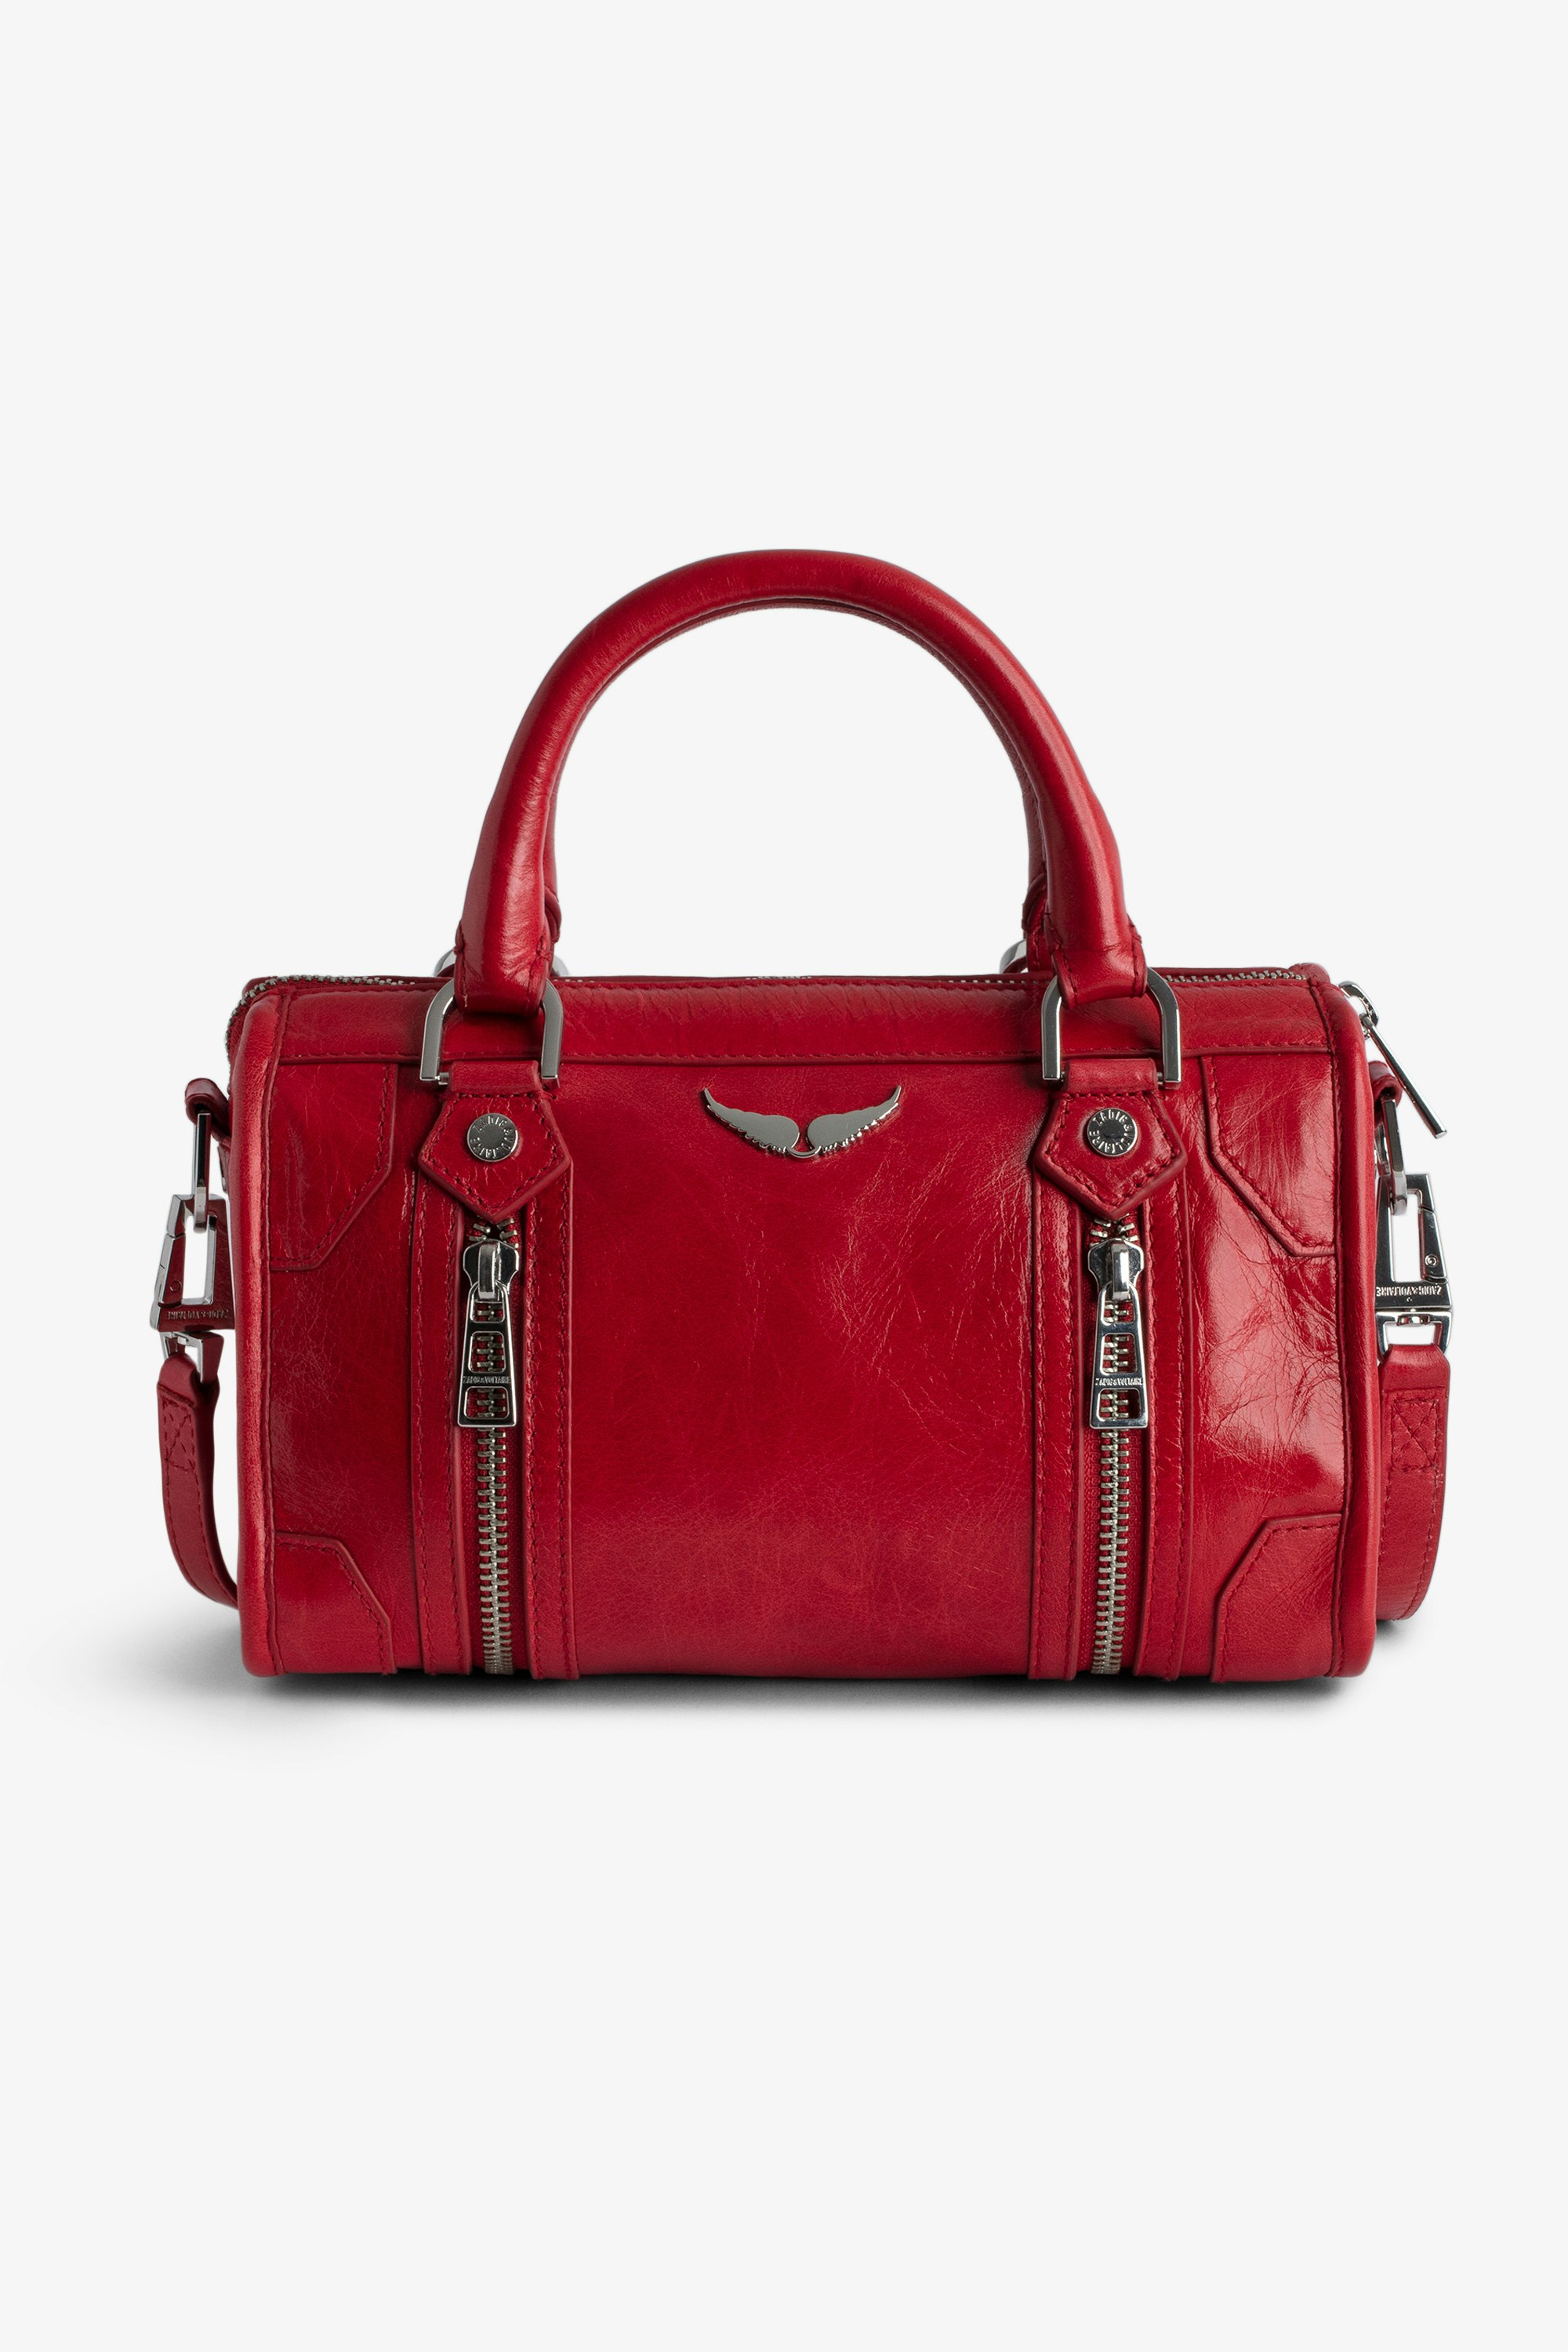 Sac XS Sunny #2 - Petit sac en cuir vernis effet vintage rouge à anses courtes et bandoulière.